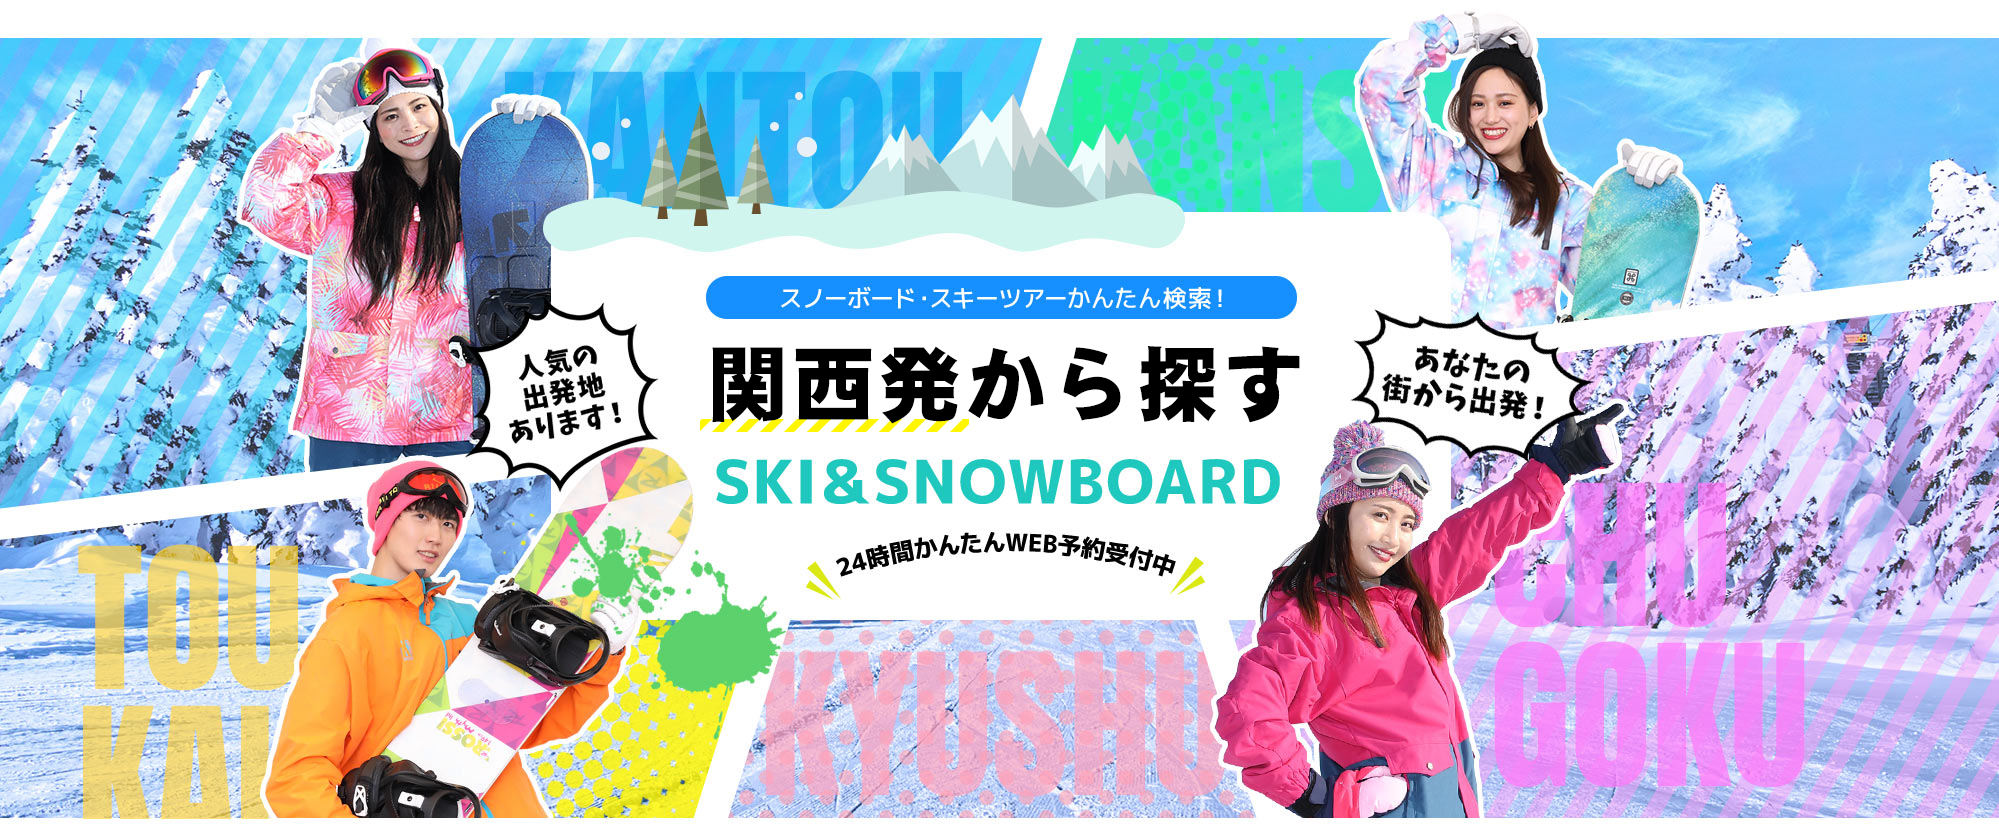 スノーボード・スキーツアーかんたん検索！ 関西発から探す SKI&SNOWBOARD